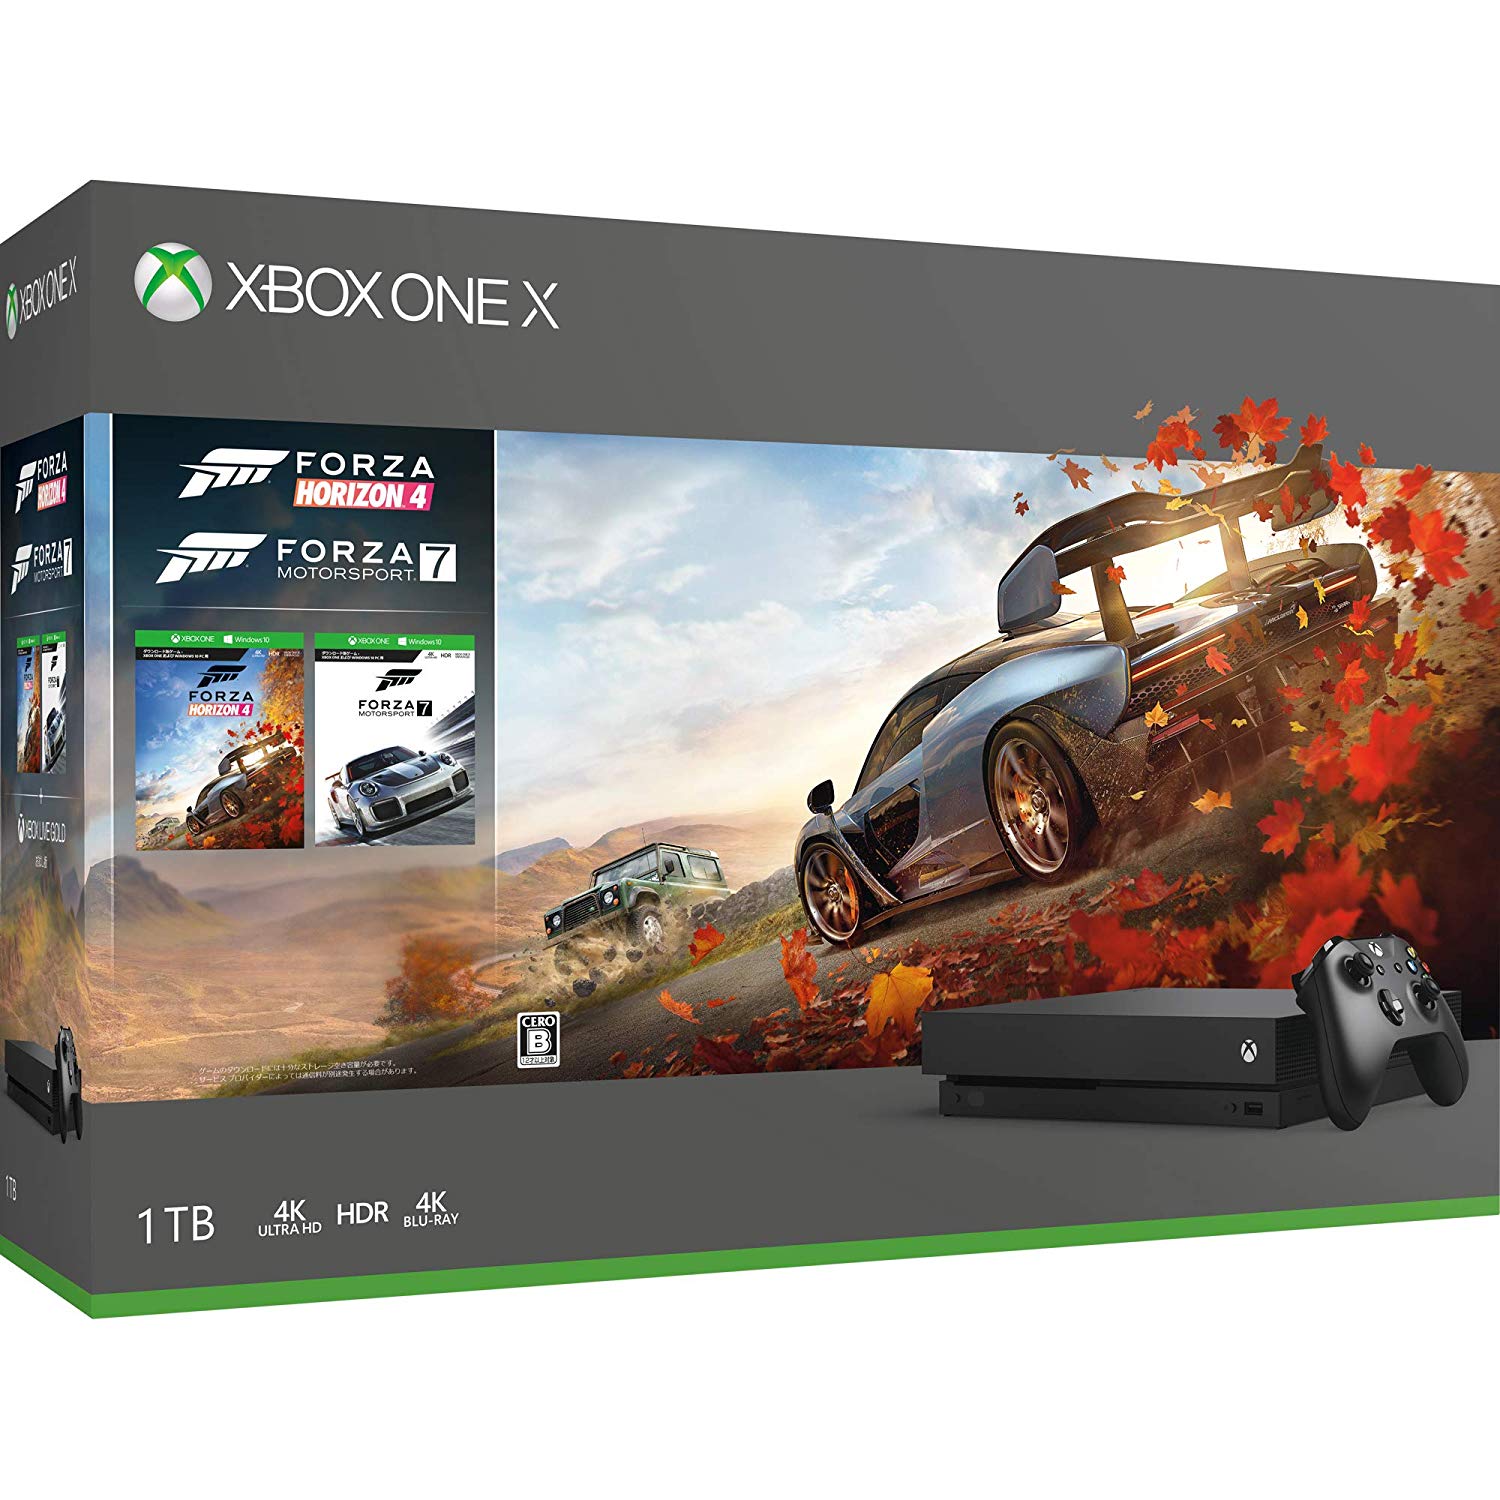 日本マイクロソフト、｢Xbox One X｣のゲーム同梱版を6,480円オフで販売するセールを開催中（3月1日まで）